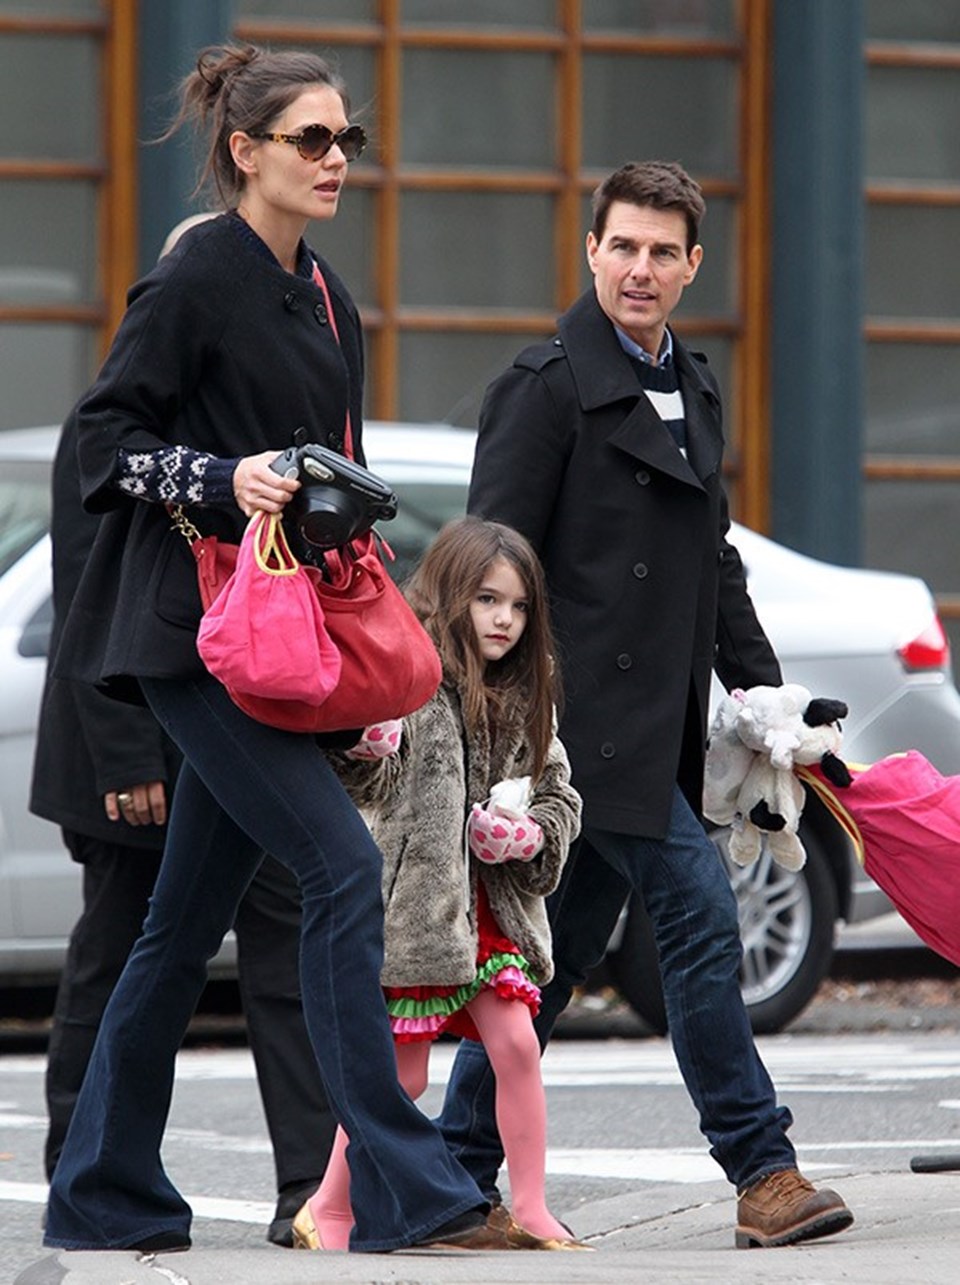 "Tom Cruise'un sevgilisi olabilmek için kızlar seçmelere giriyordu" (Scientology tarikatınin iç yüzü) - 1